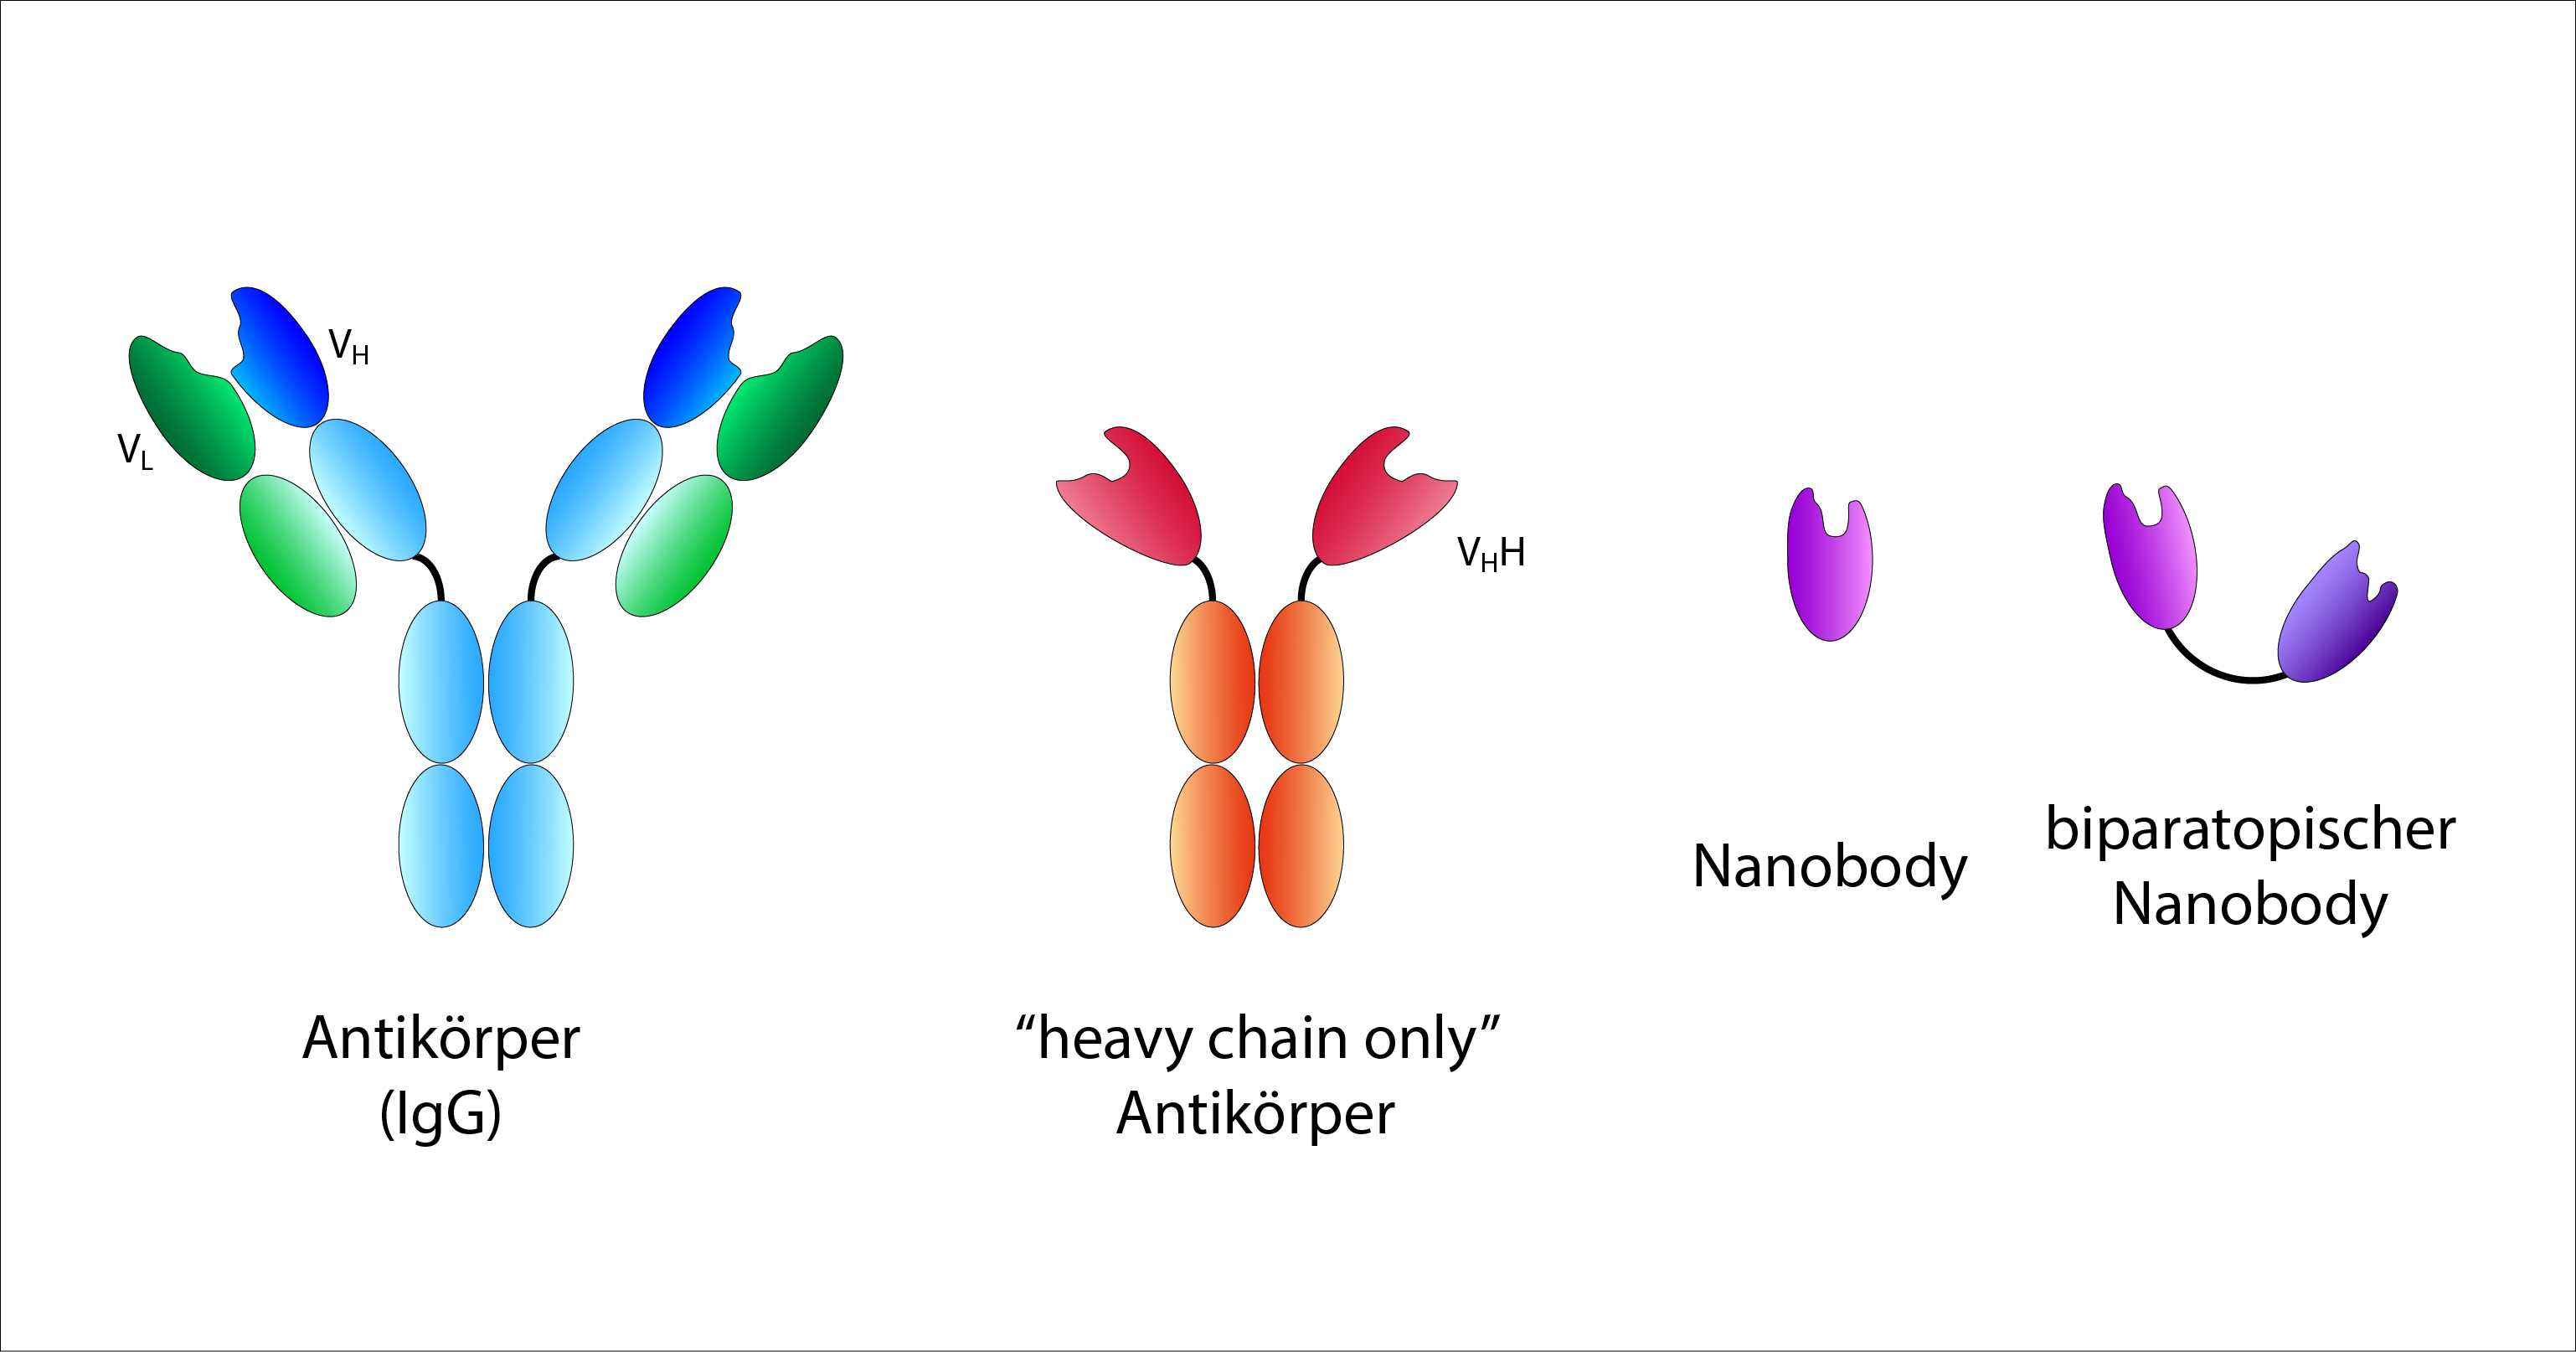 Schematische Darstellung des Aufbaus von konventionellen Antikörpern, „heavy chain only“ Antikoerpern, Nanobodies und biparatopischen Nanobodies in unterschiedlichen Farben.